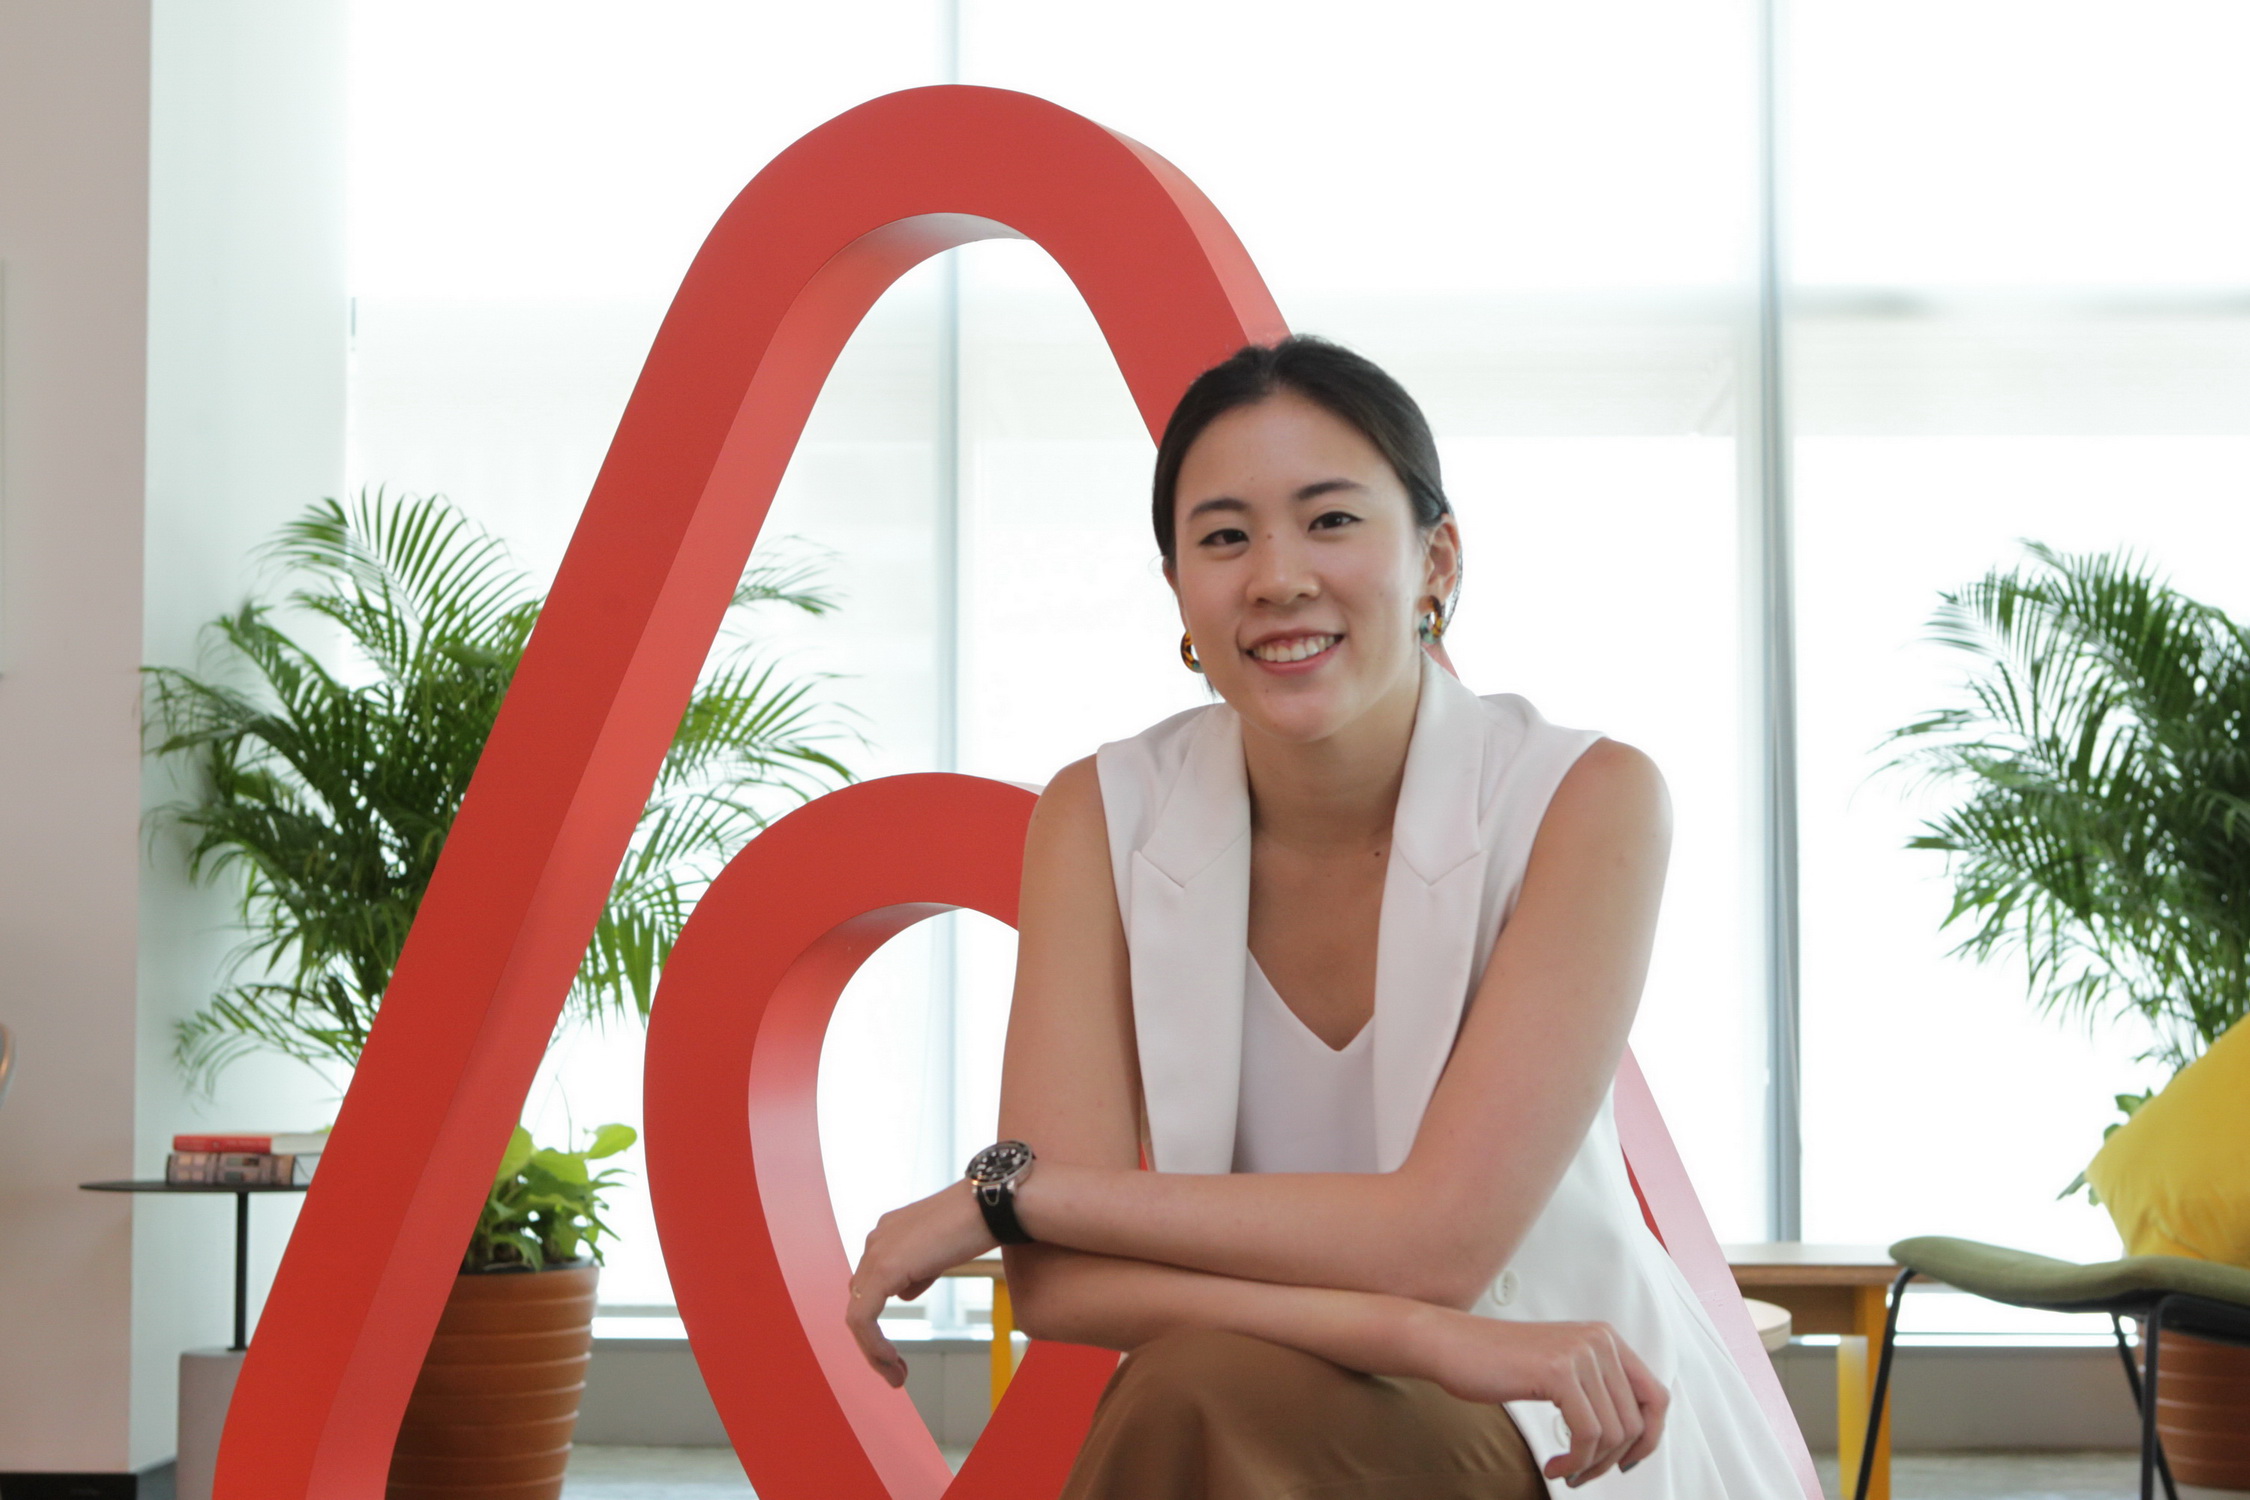 กระทรวงสาธารณสุข ร่วมกับ Airbnb สนับสนุนโครงการที่พักแก่เจ้าหน้าที่ผู้ปฏิบัติงานแนวหน้าสู้โควิด-19 ในประเทศไทย